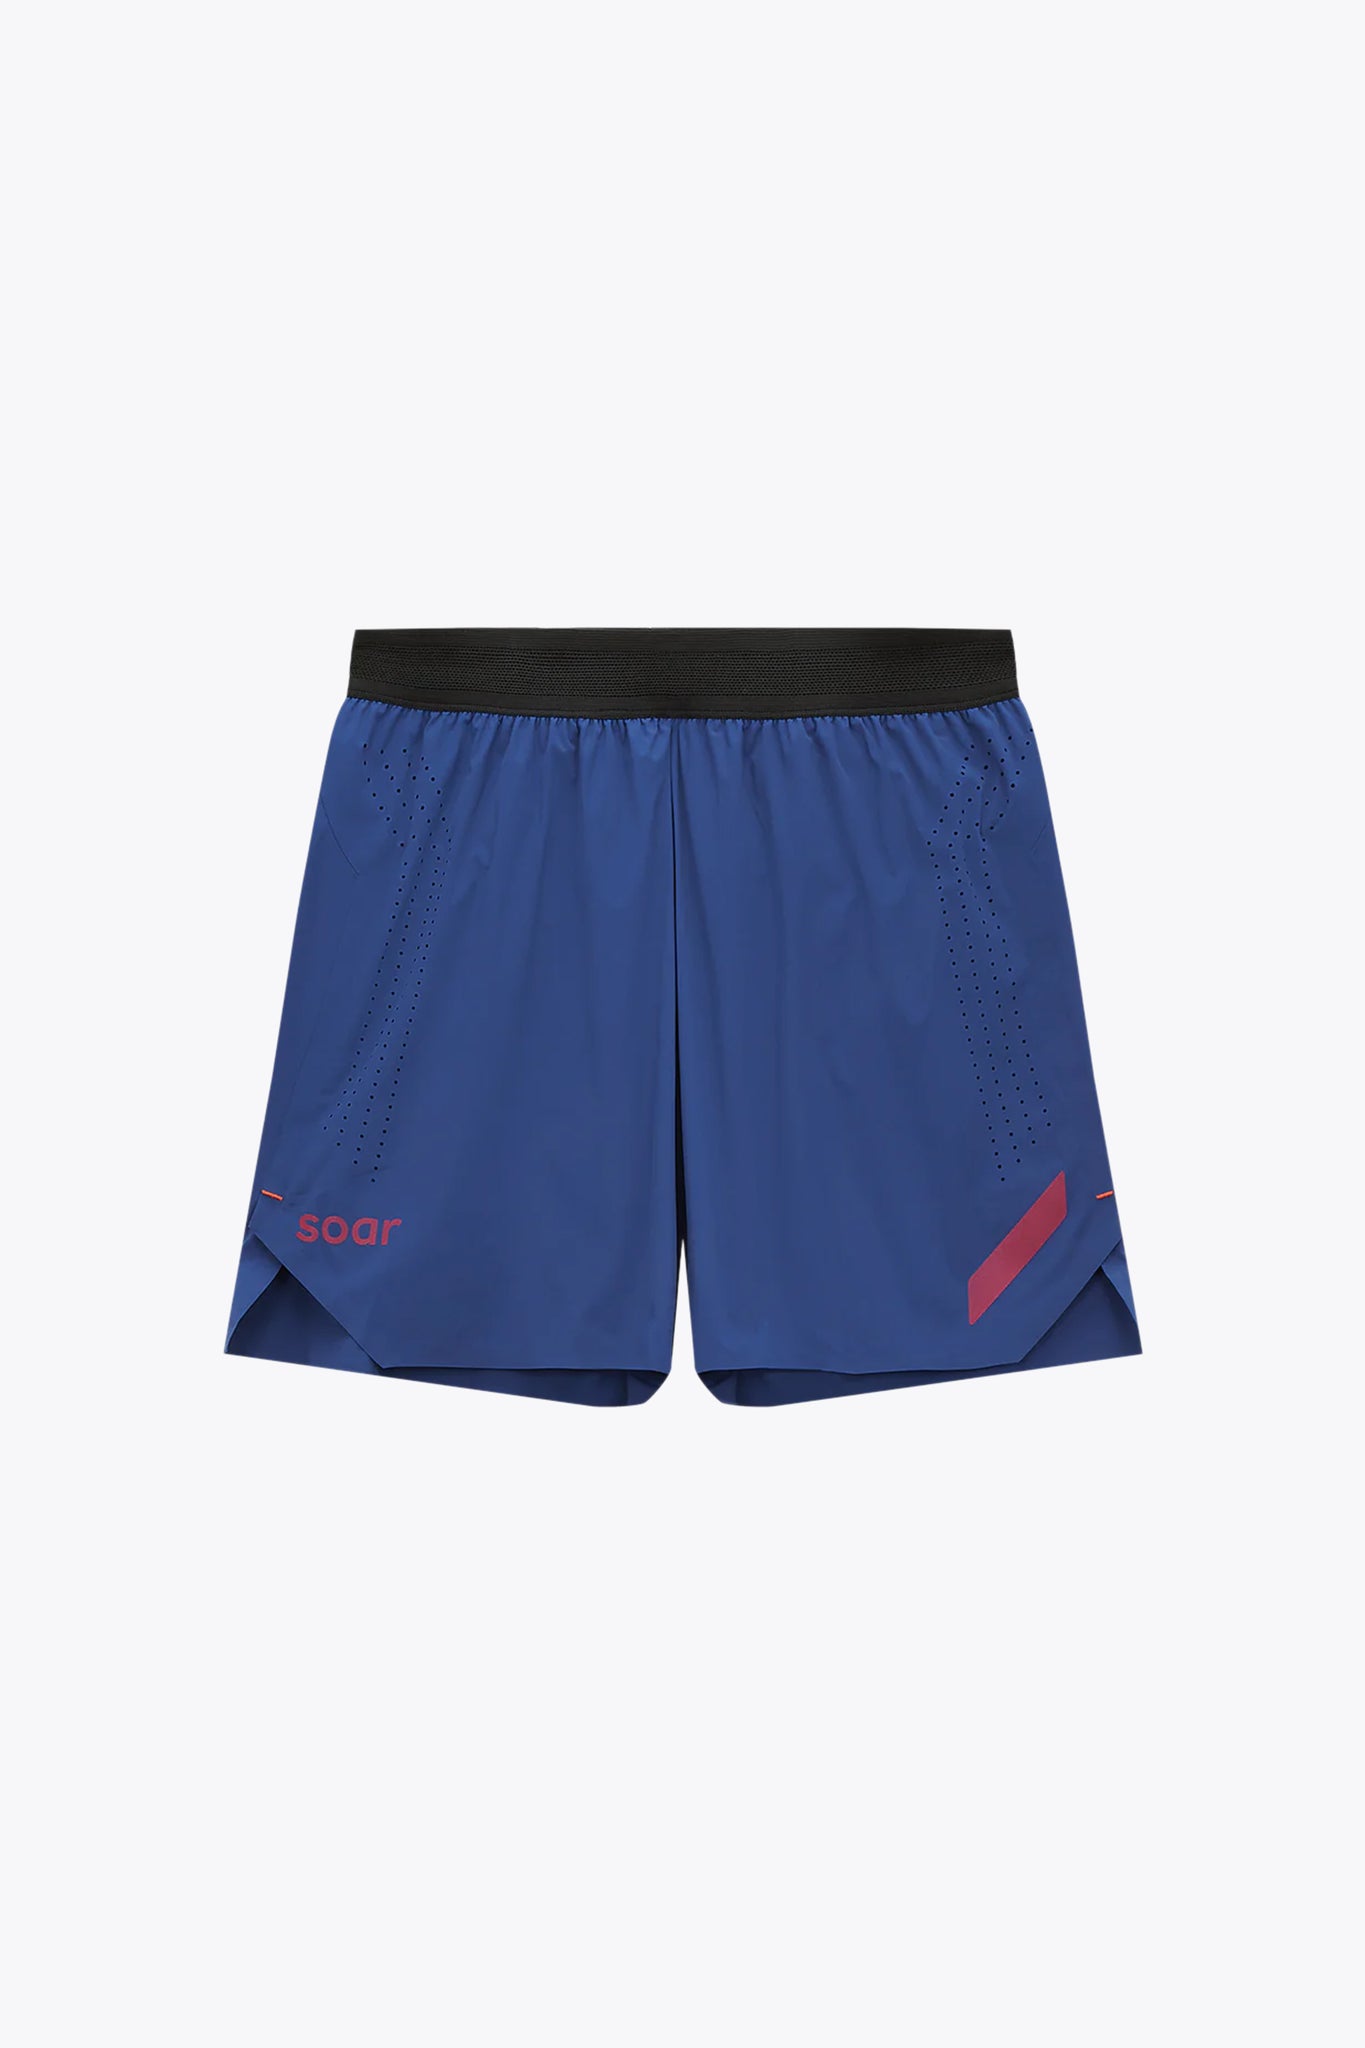 SOAR Run Shorts in Blue